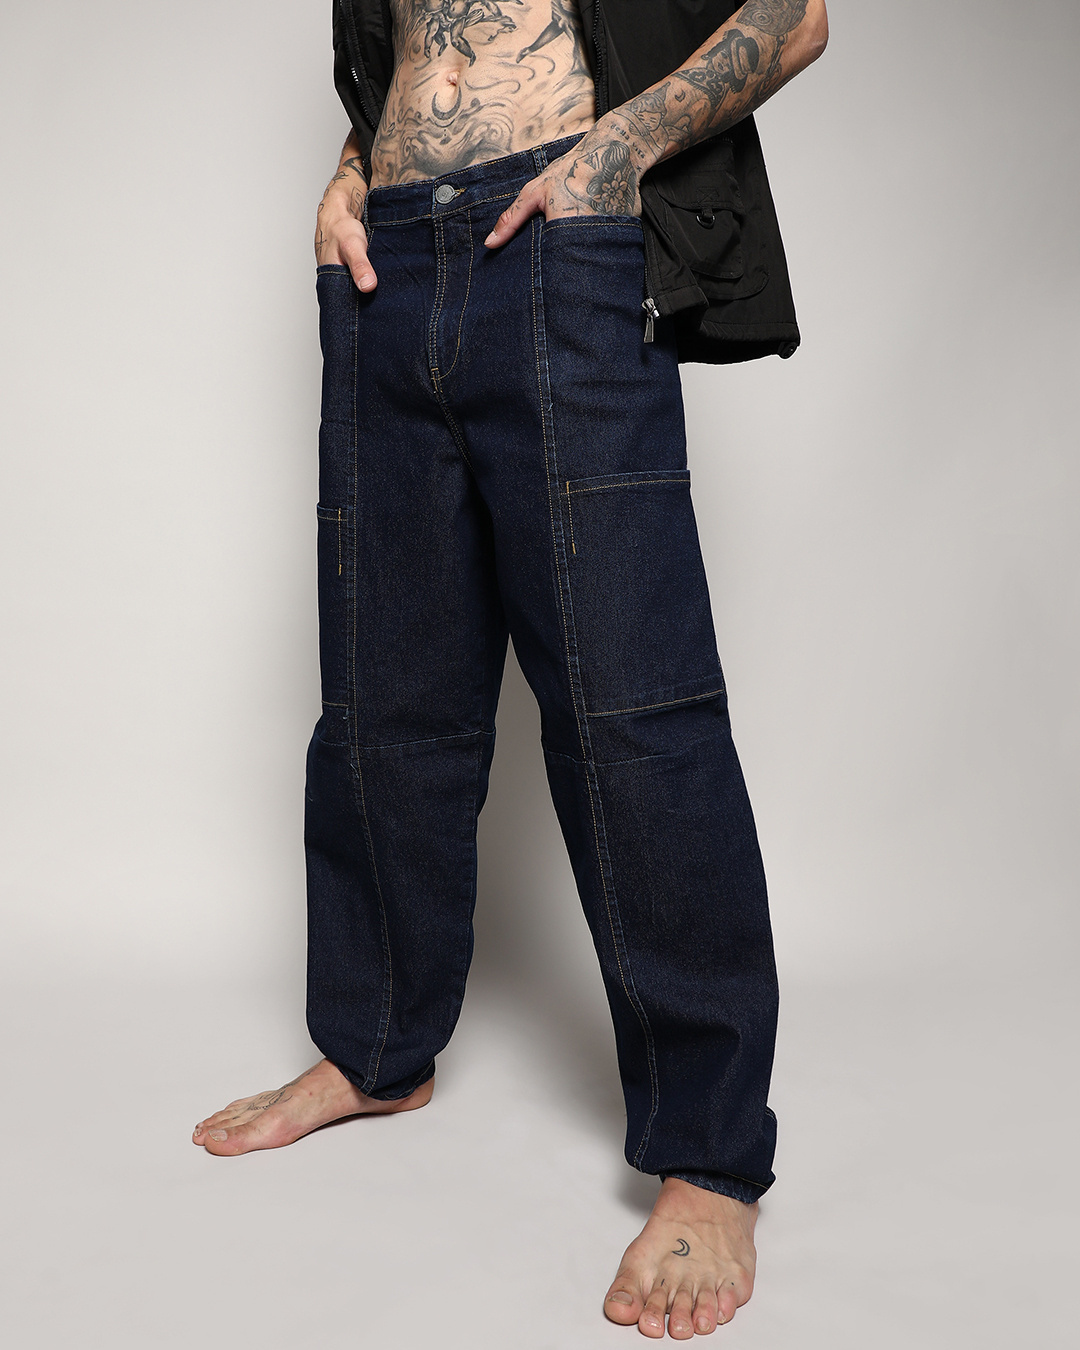 Buy Men's Blue Baggy Oversized Cargo Jeans Online at Bewakoof